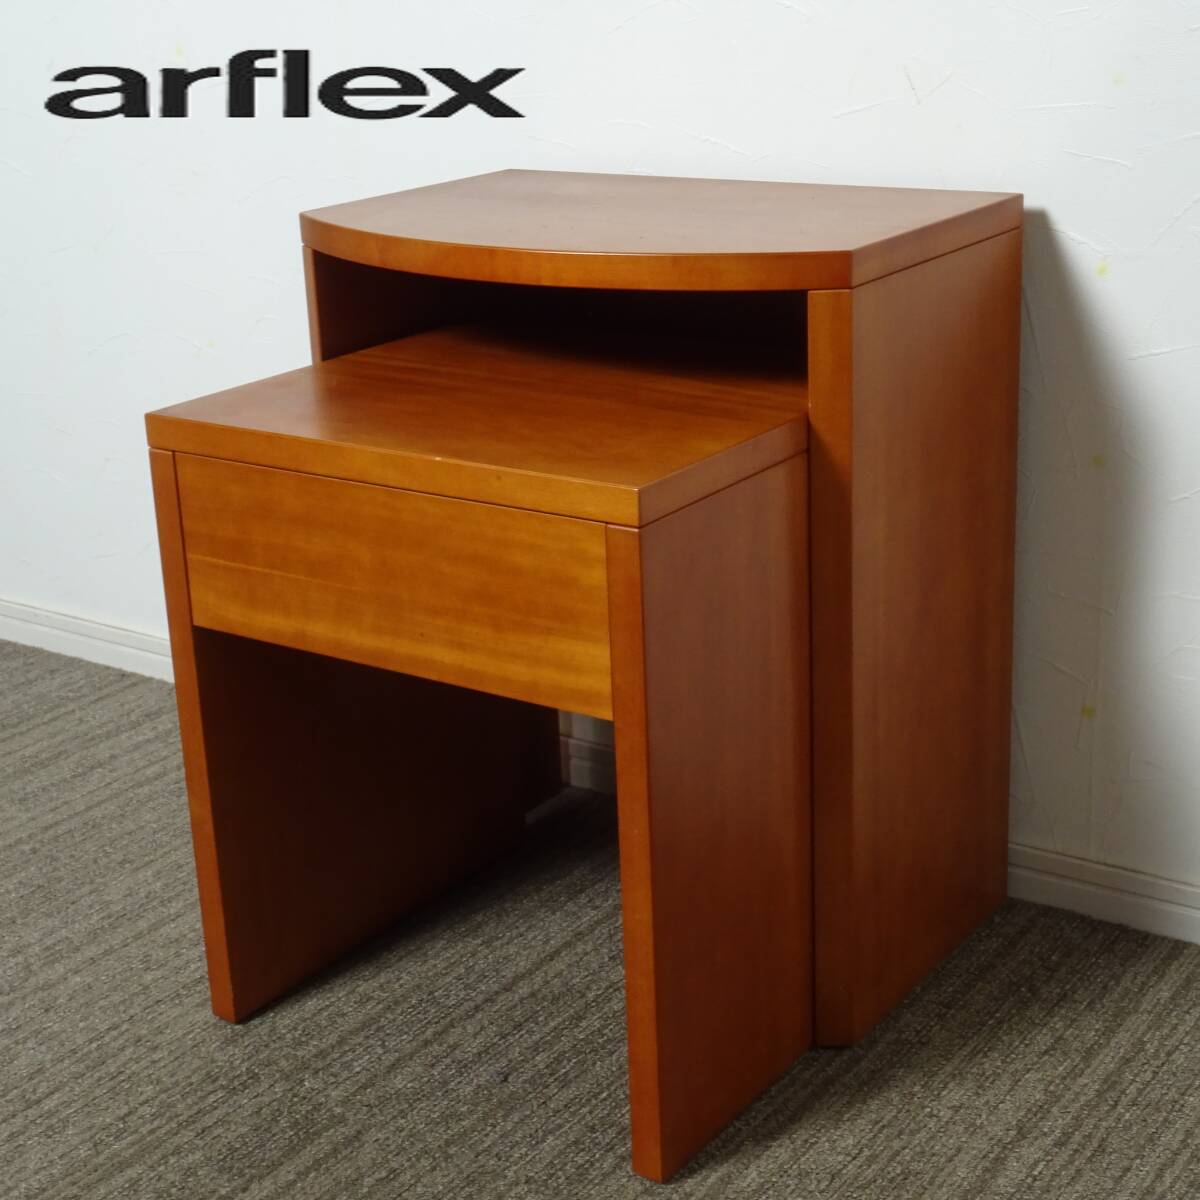 アルフレックス arflex ポルト PORTO ネストテーブル の画像1